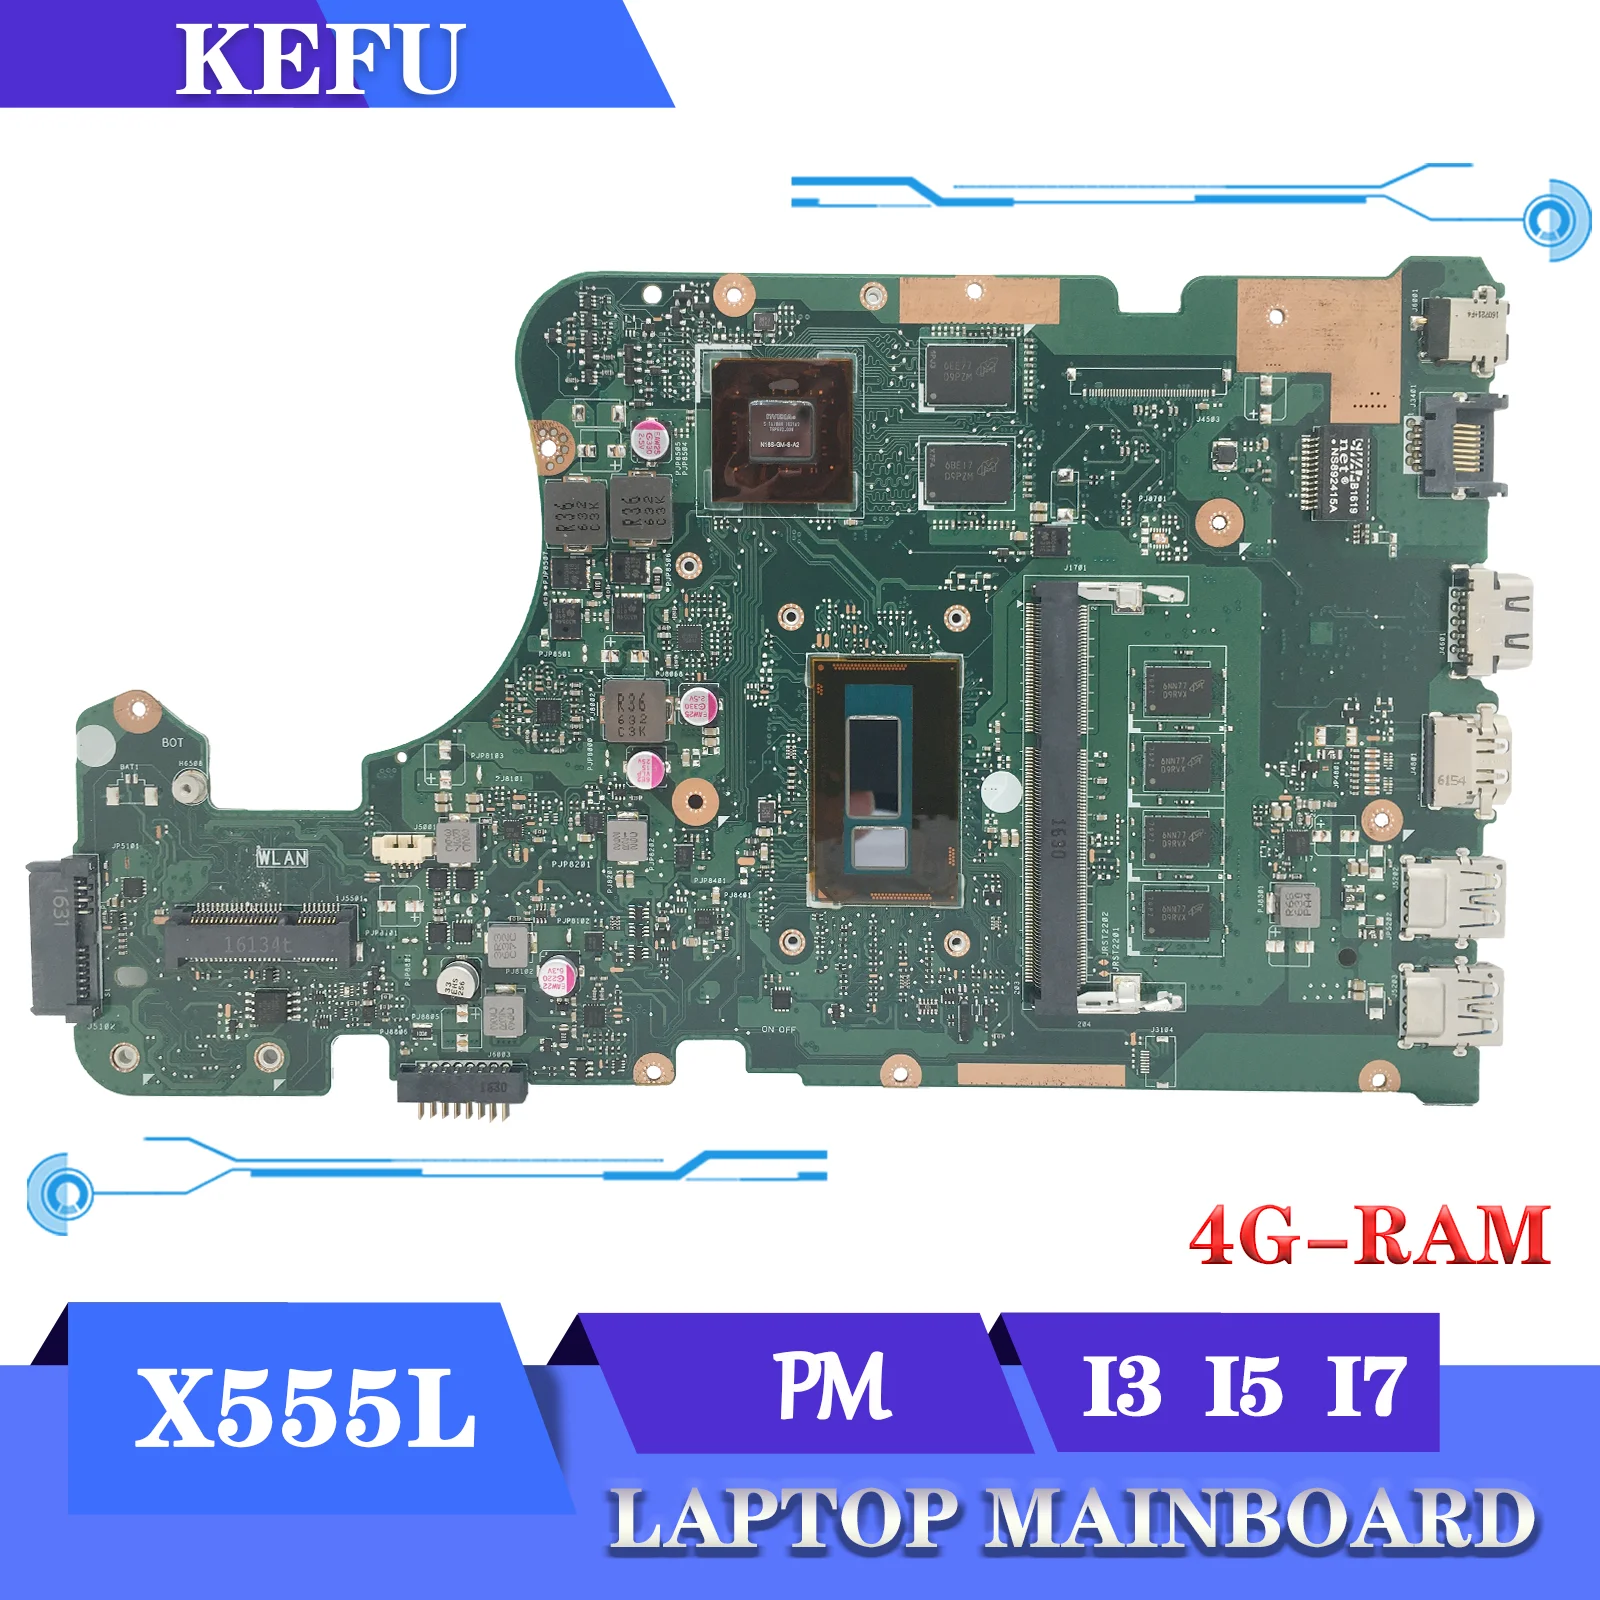 

Материнская плата X555L A555L K555F F555L для ASUS X555LD X555LP X555LN X555LB X555LI X555LF X555LJ X555LDB материнская плата для ноутбука i3 i5 i7